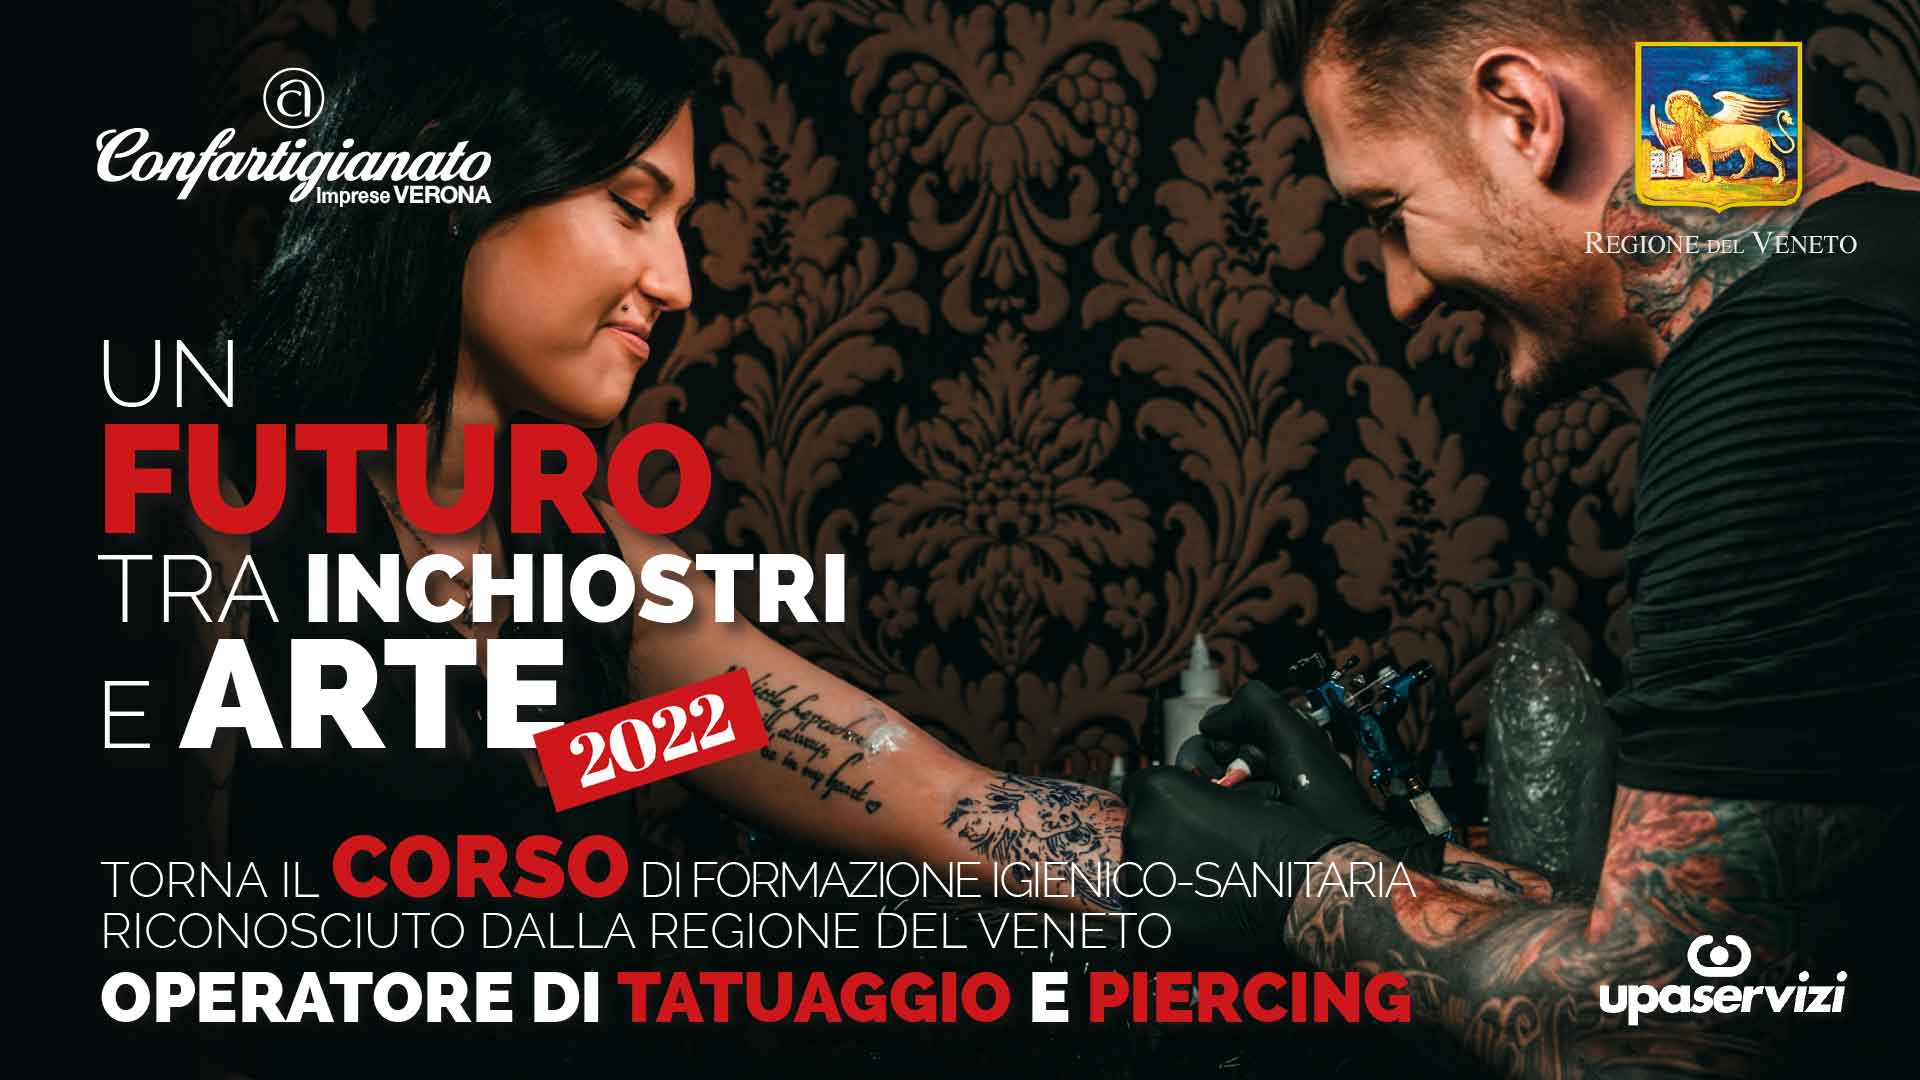 TATUAGGI & PIERCING – Torna il corso a riconoscimento regionale per l'abilitazione all'attività di tatuaggio e piercing. Crediti formativi per estetiste